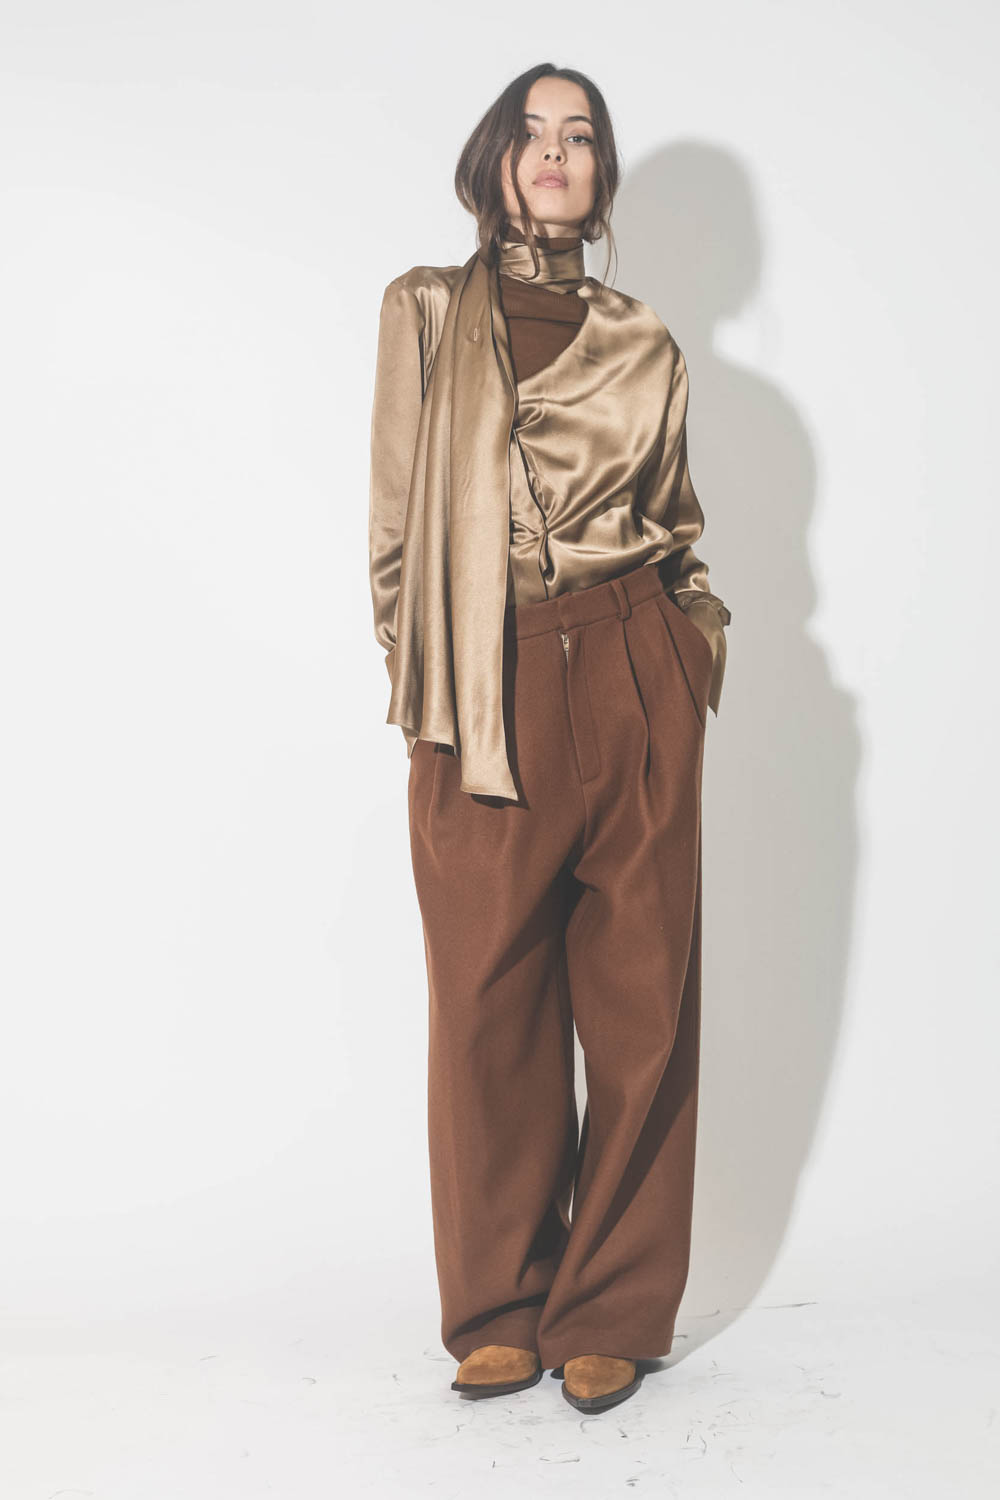 Chemise manches longues drapée col écharpe en satin de soie camel doré. Porté avec un pantalon à pinces en drap de laine marron.